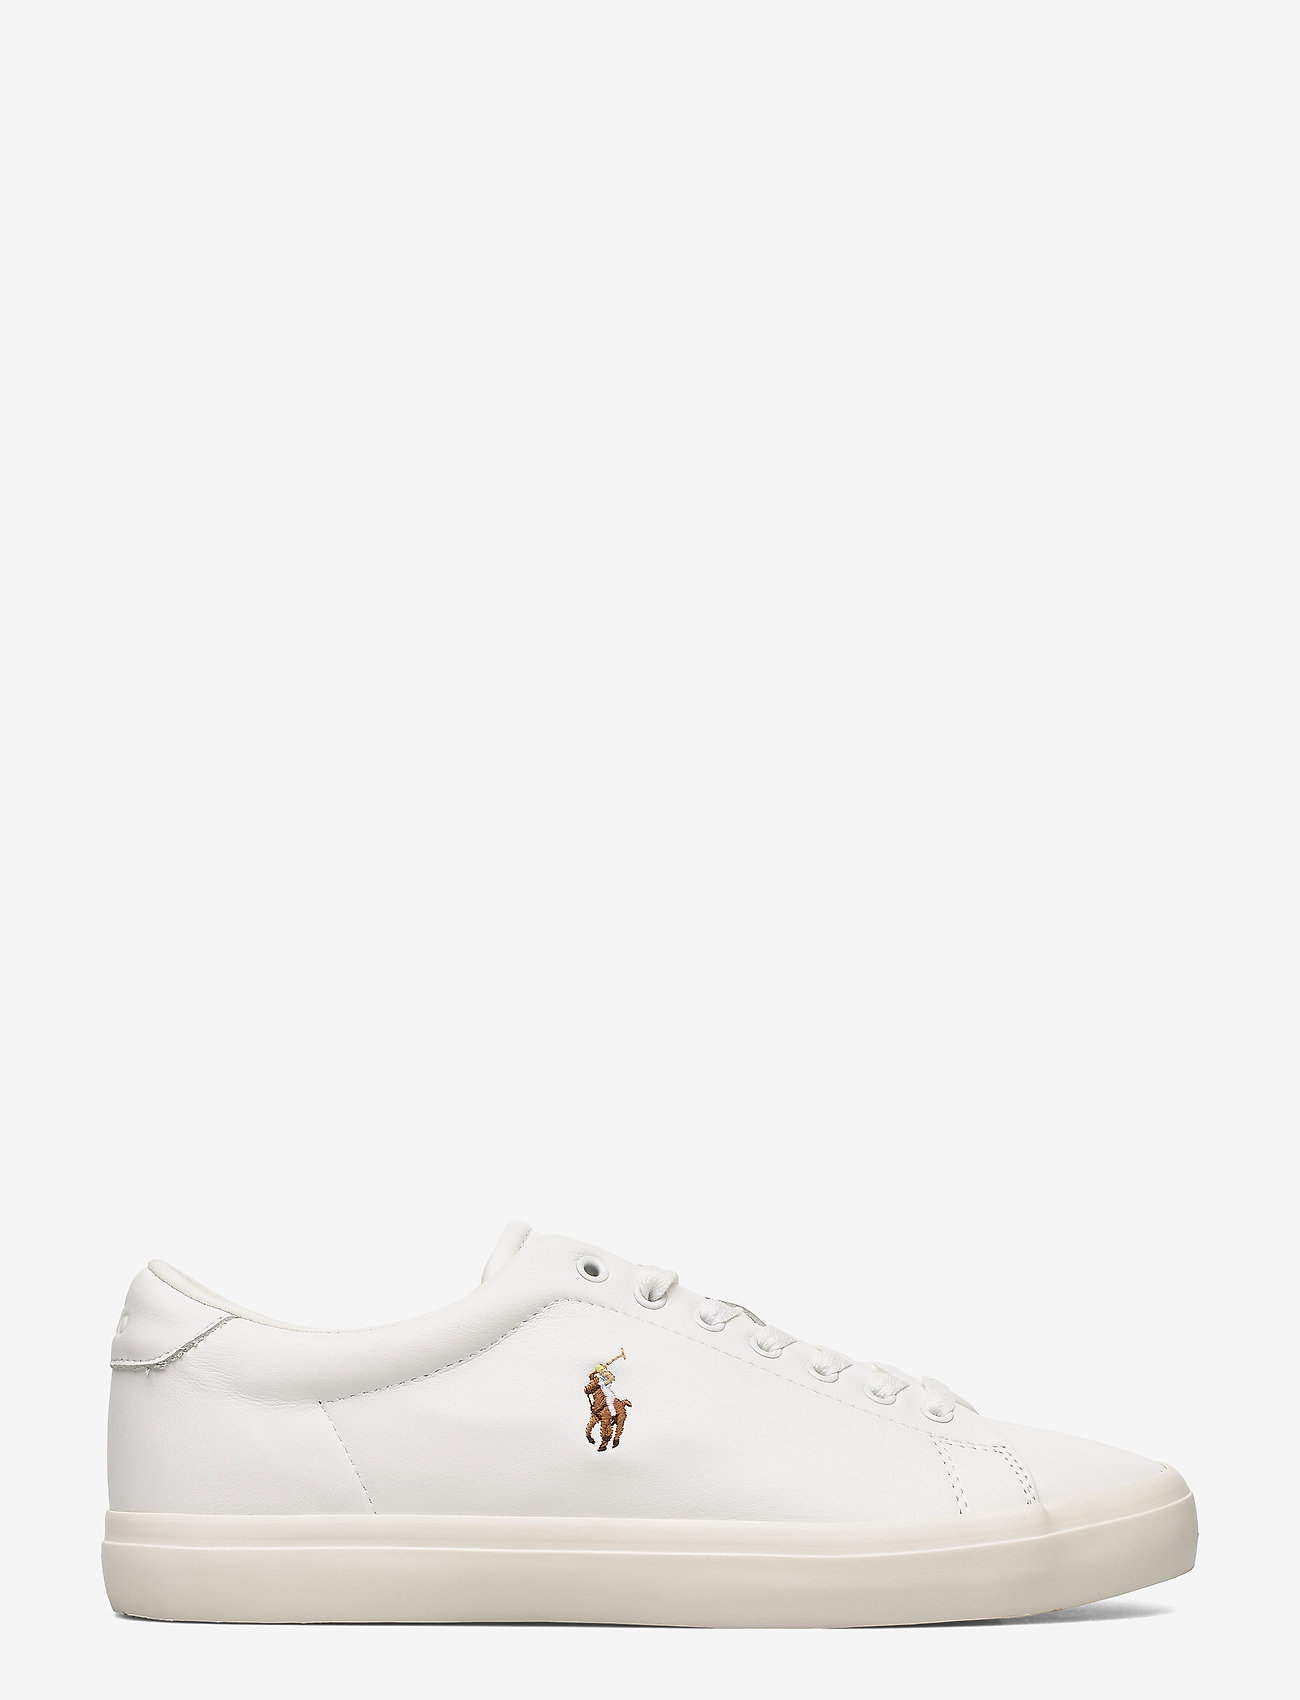 Polo Ralph Lauren - Longwood Leather Sneaker - waterproof sneakers - white/white - 1